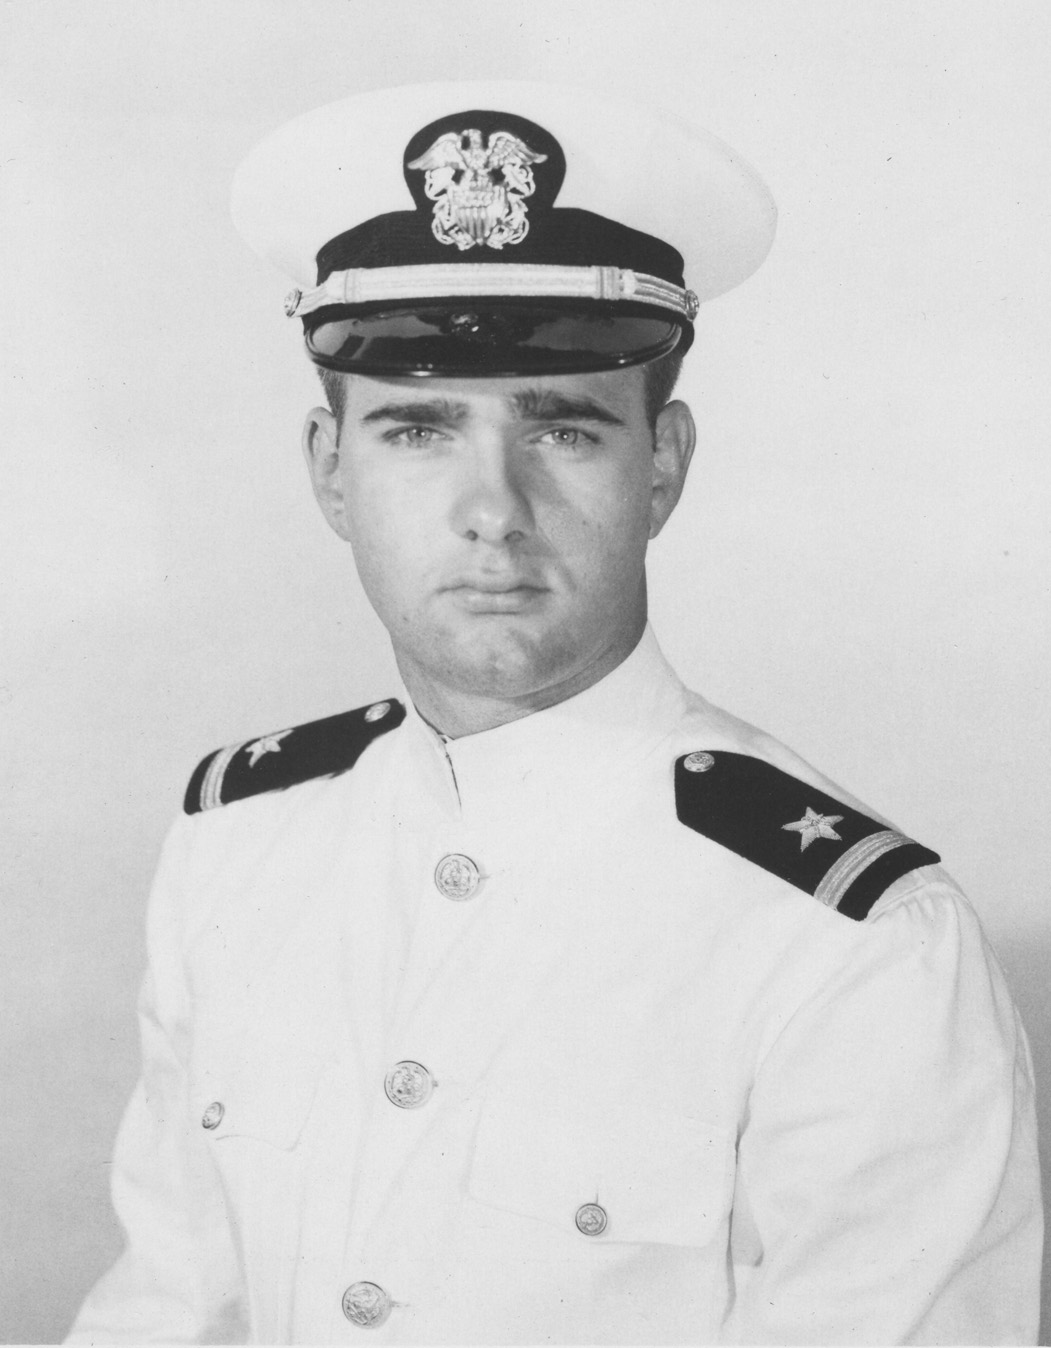 Robert C. Cox